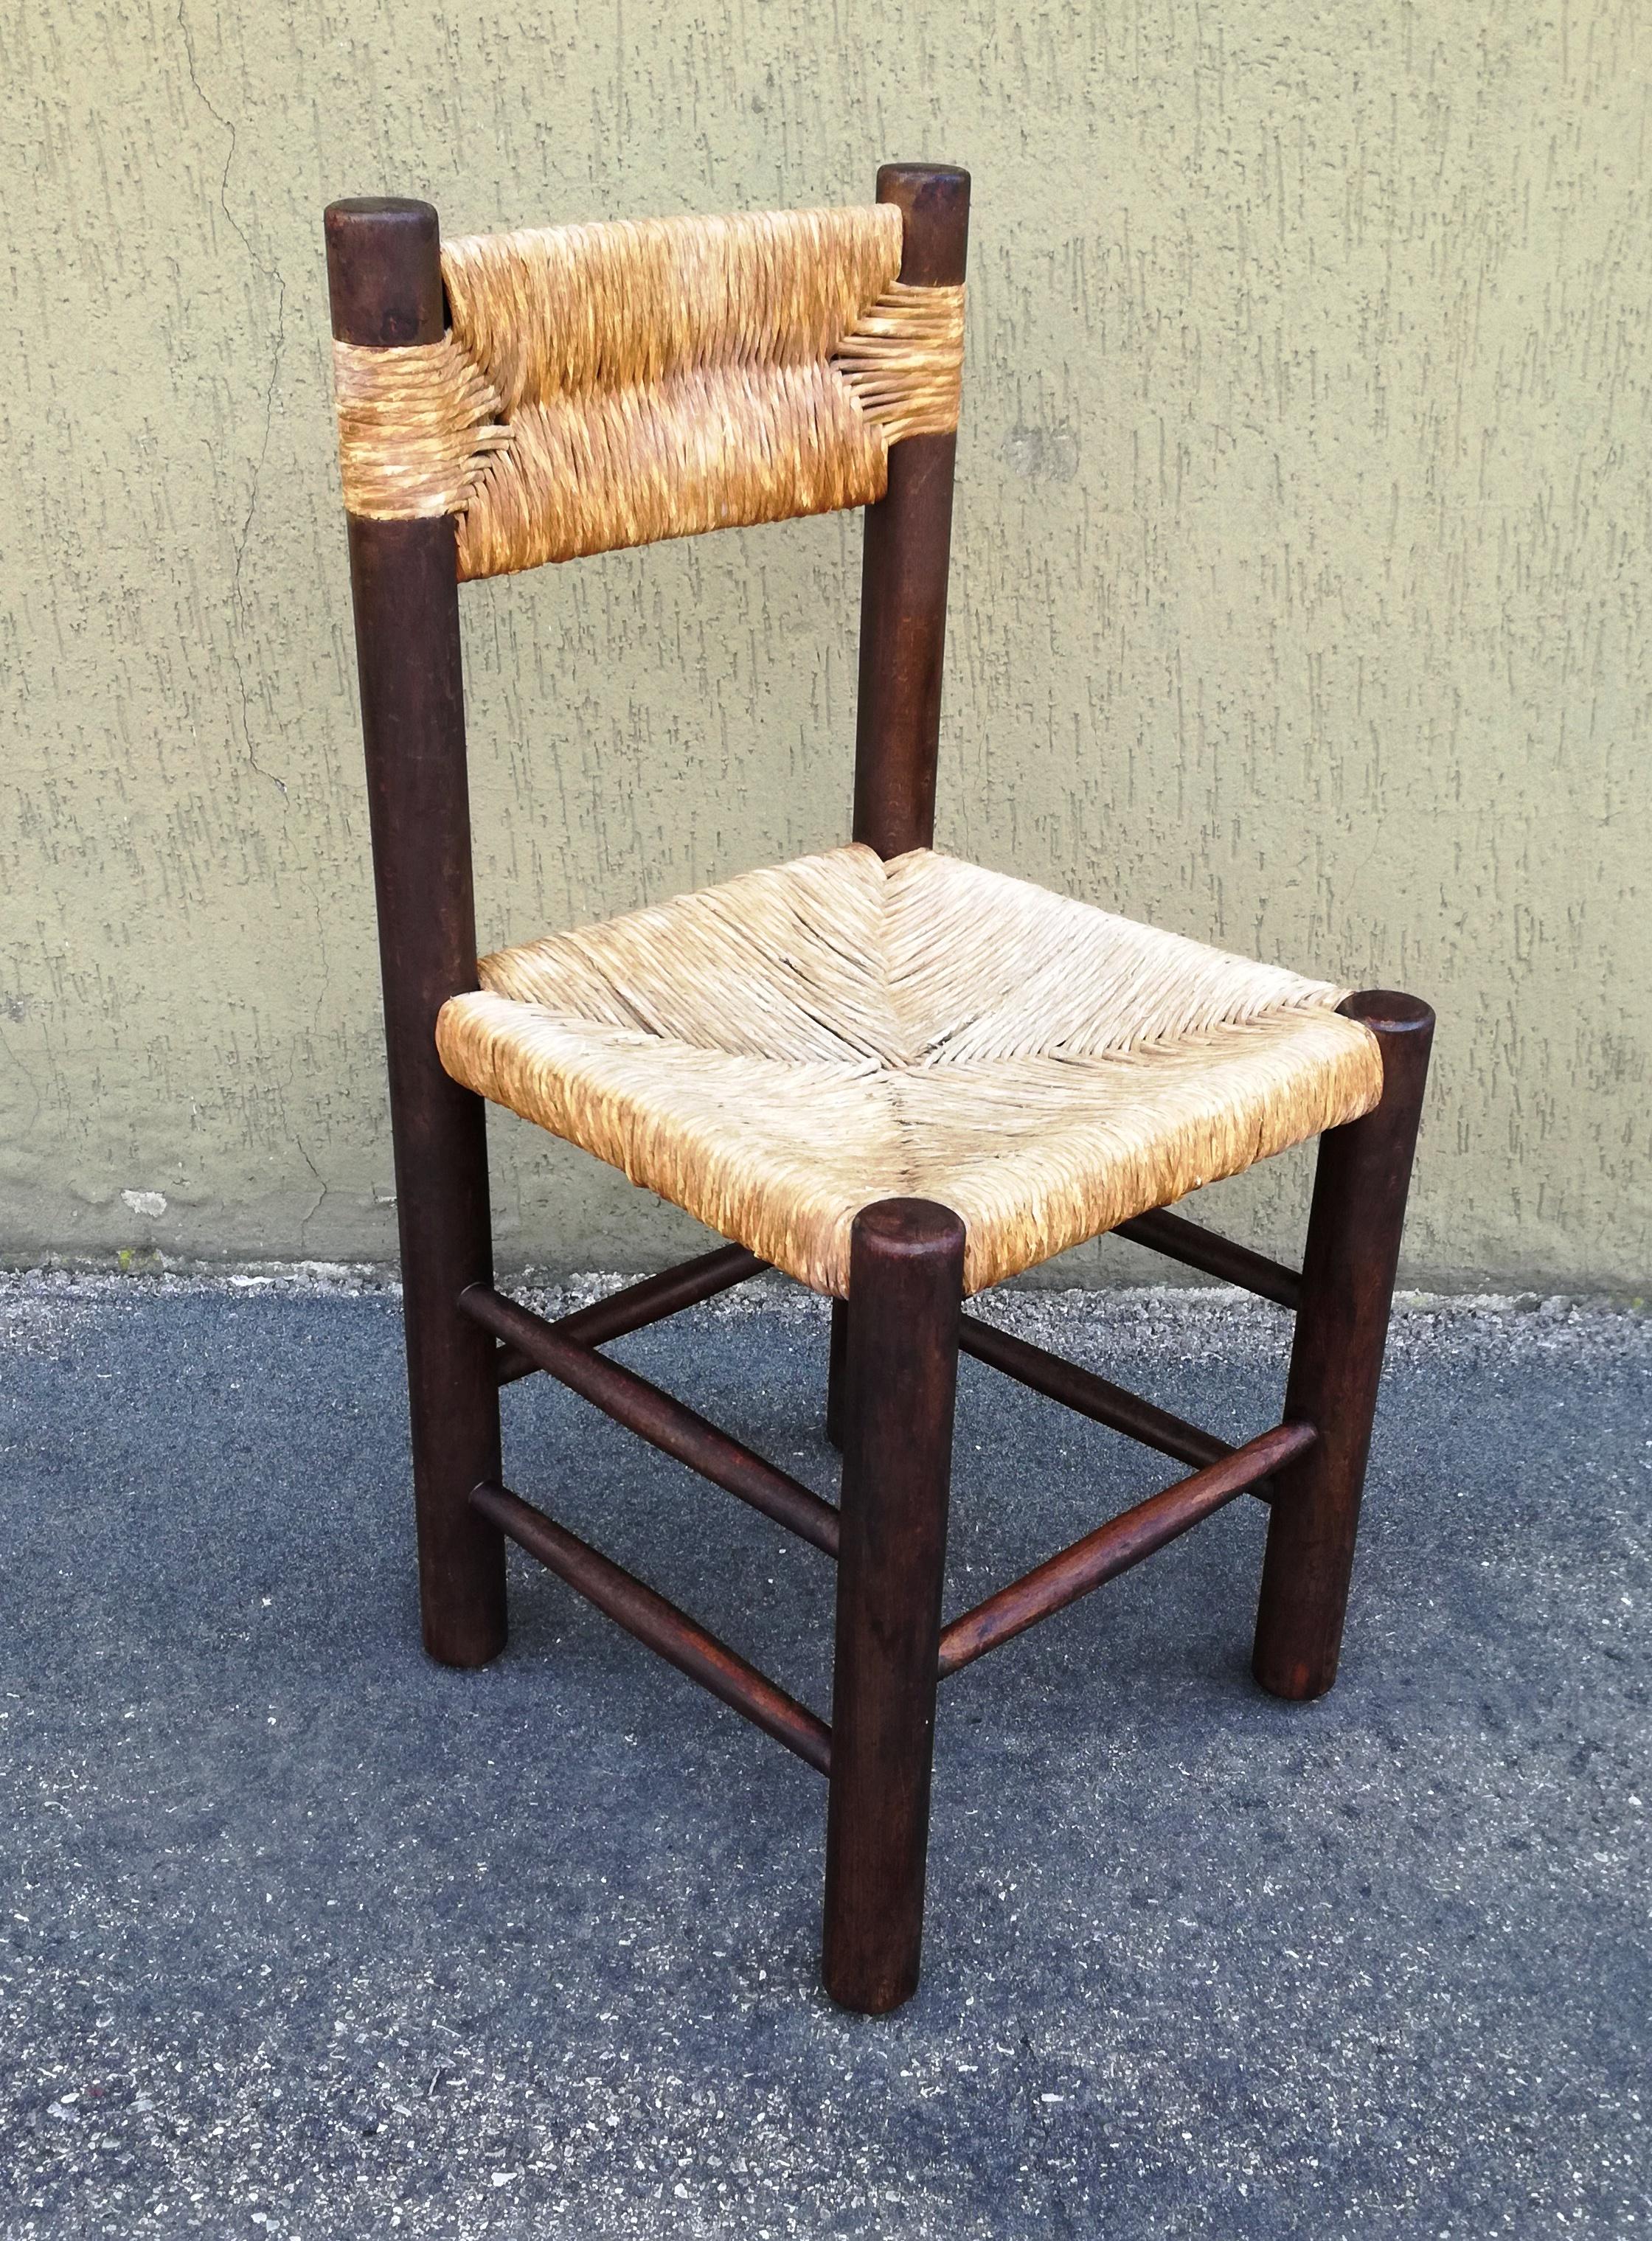 sedia nello stile di Charlotte Perriand, mod Dordogne. questa sedia fu prodotta da Corbetta italy. Modello depositato. anni 60. struttura solida ,sana e senza tarli, paglia in ordine.